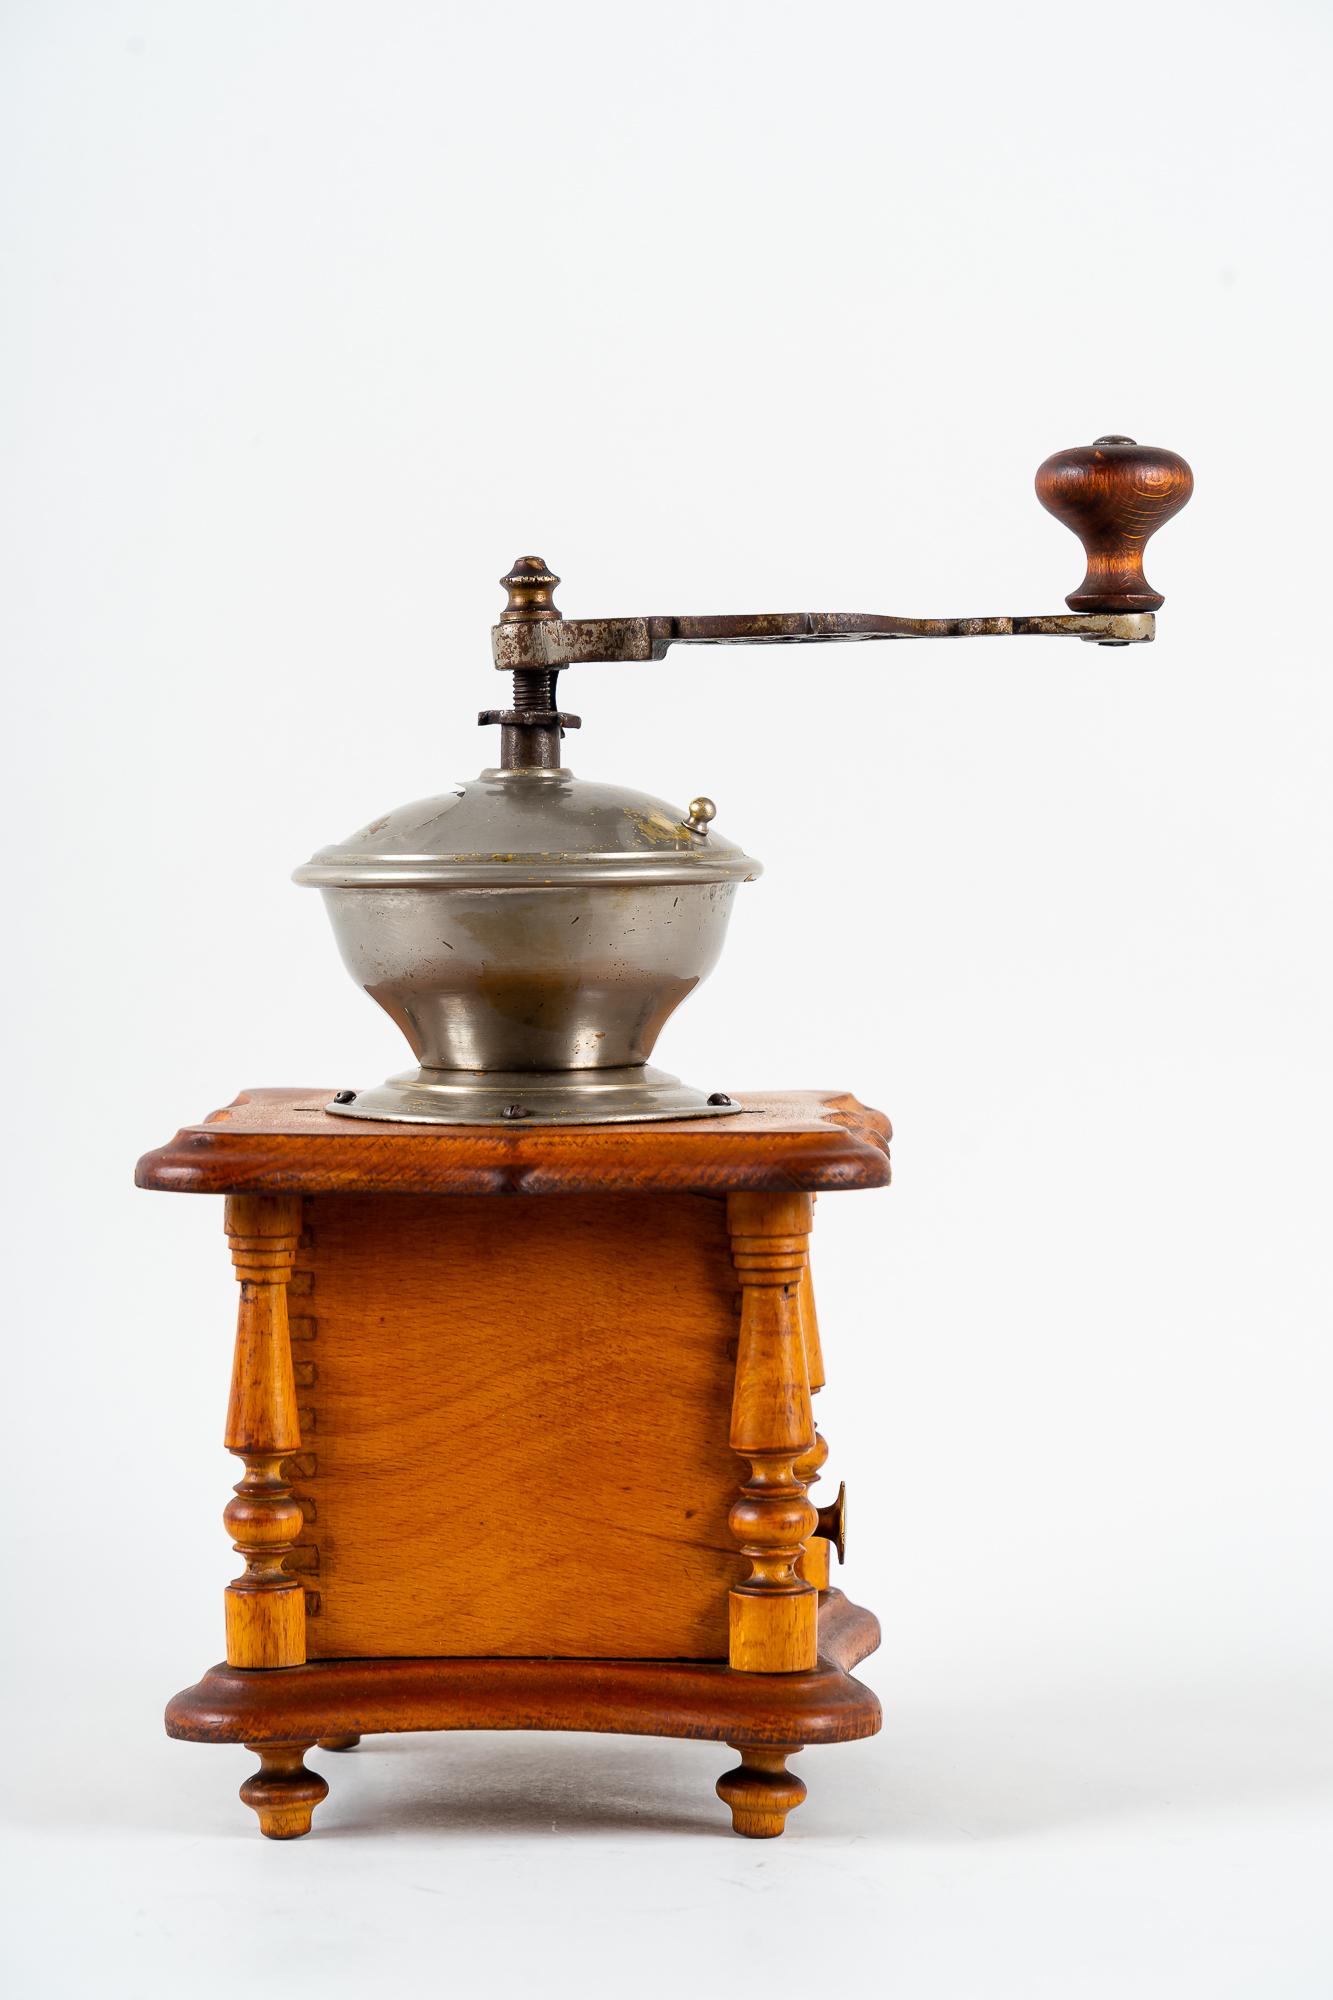 Art Deco coffee grinder vienna around 1920s
Original condition.